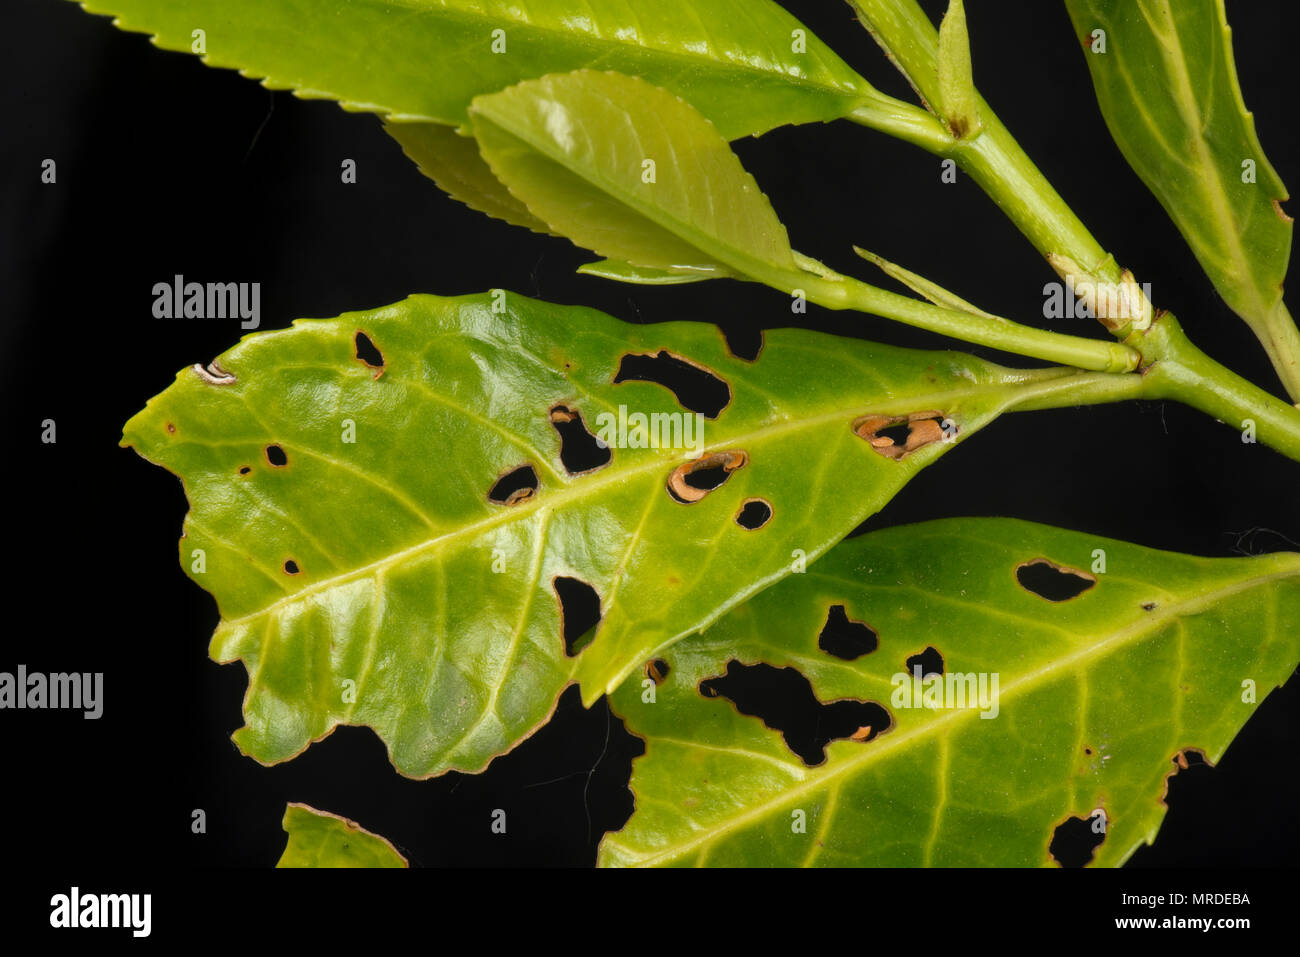 Bakterielle schuss Loch, Pseudomonas syringae, betroffene Blätter Lorbeer, Prunus laurocerasus, in einem Garten Hecke, Mai Stockfoto